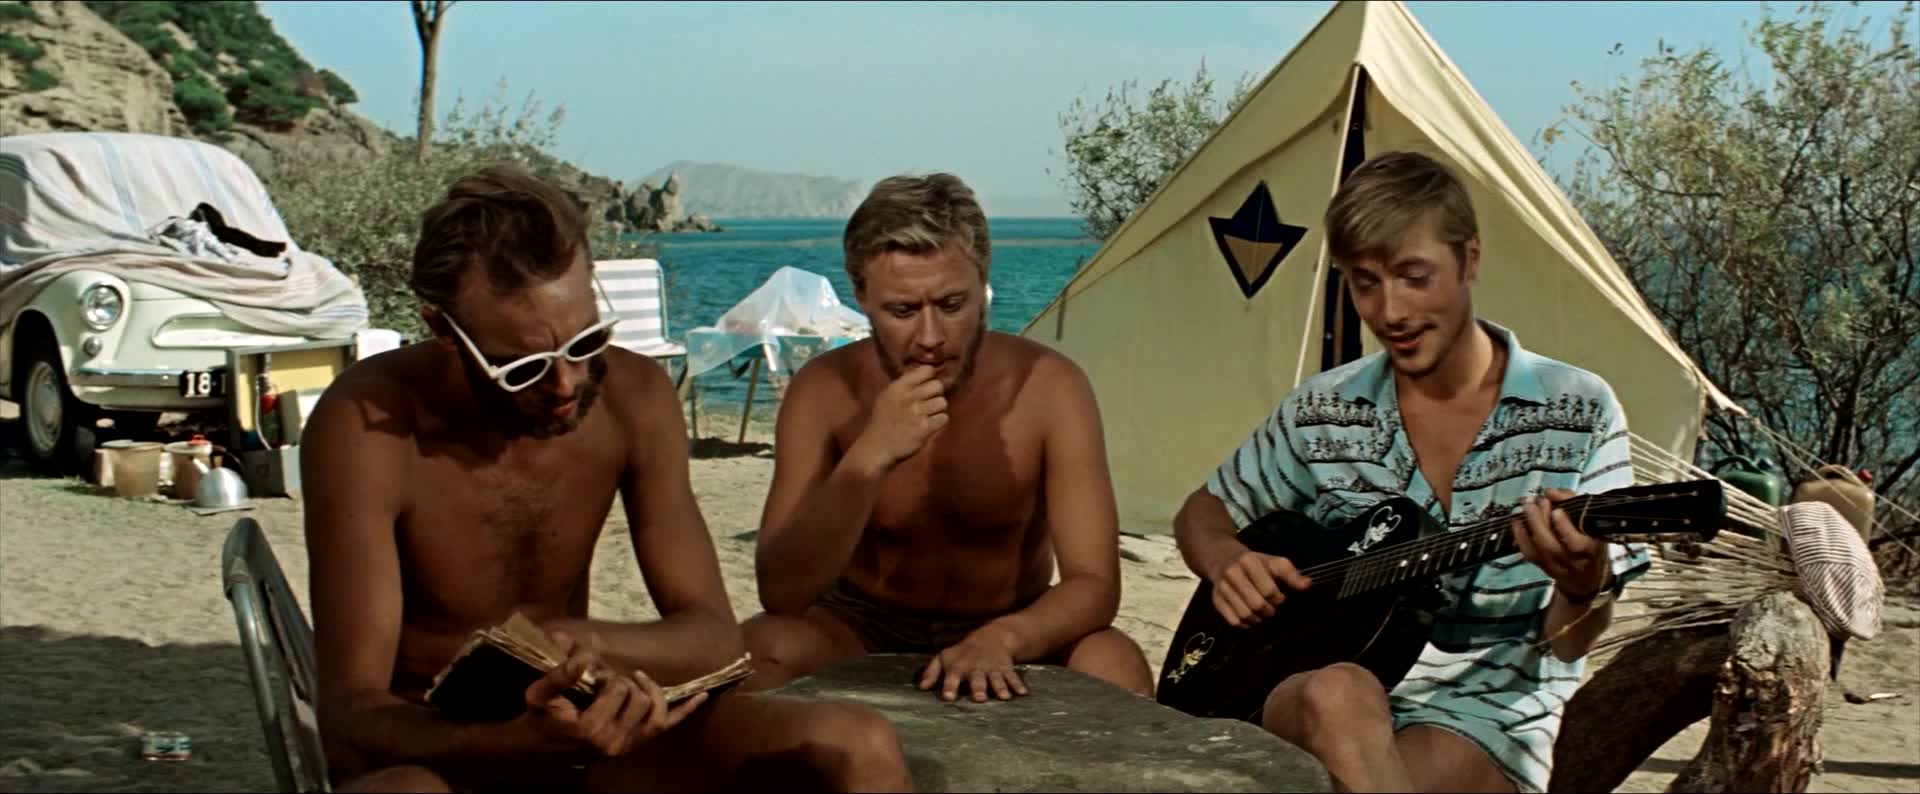 Три плюс два (Фильм 1963) смотреть онлайн бесплатно в хорошем качестве